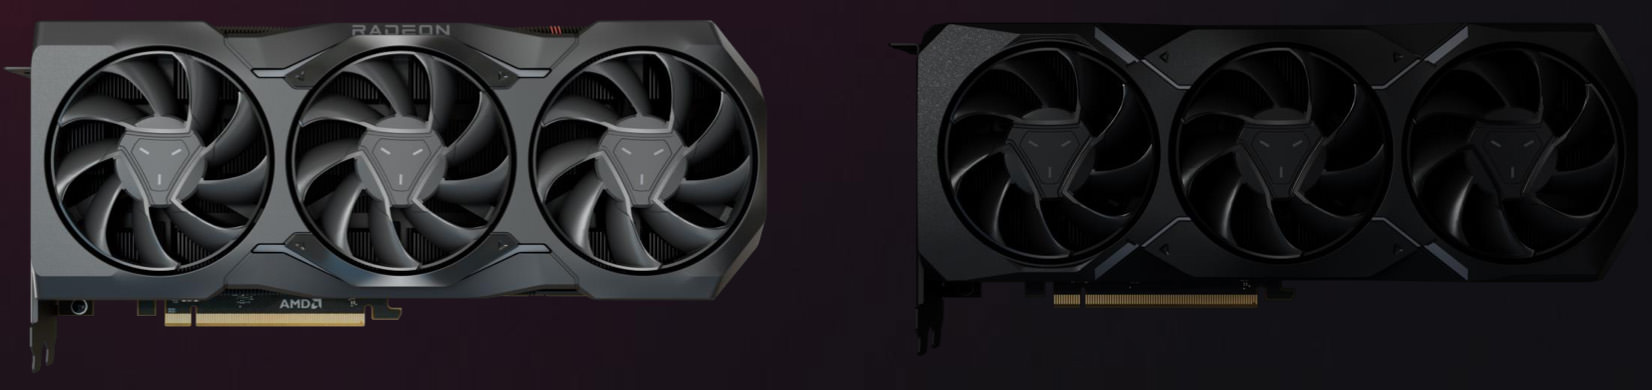 گرافیک AMD RX 7900 XTX و RX 7900 XT از نمای جلو